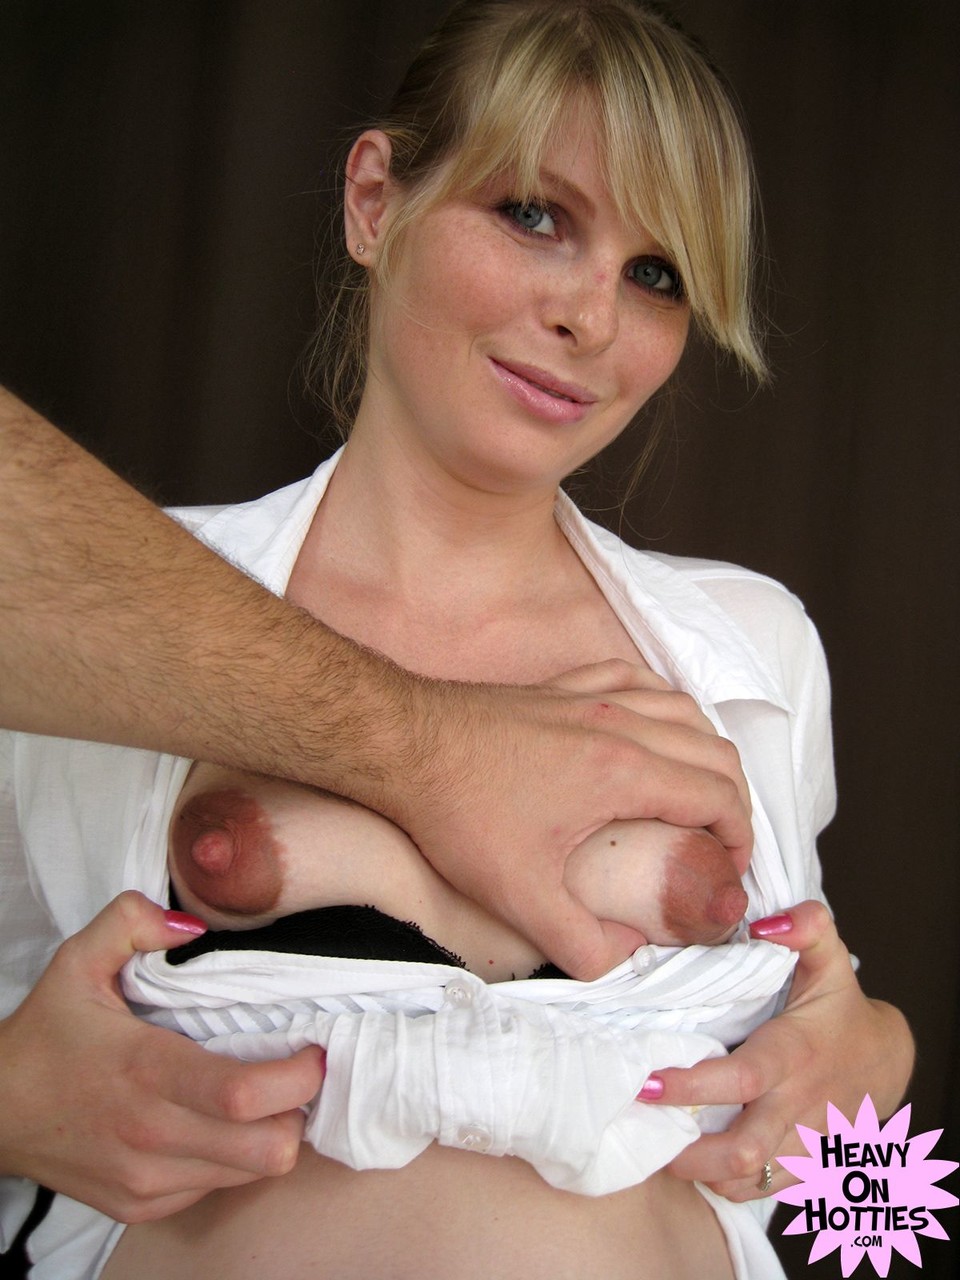 Sweet pregnant Ukrainian Wiska milks her big tits and gives a blowjob porno foto #428635793